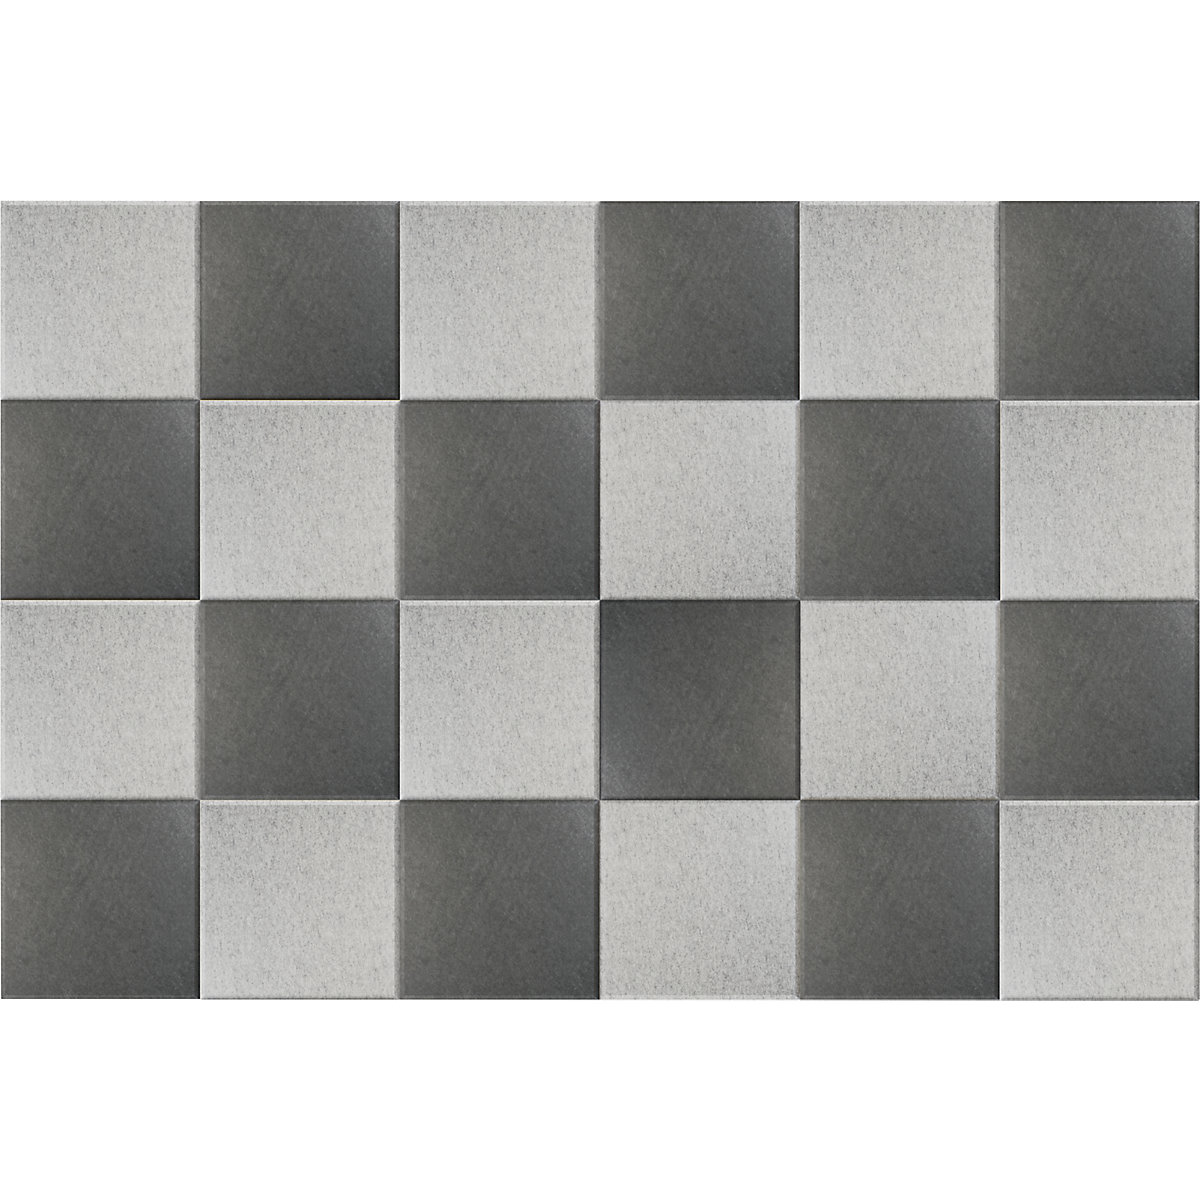 Pannello fonoassorbente da parete – eurokraft basic, alt. x largh. 300 x 300 mm, conf. da 24 pz., 12 per ciascun colore: grigio chiaro, grigio scuro-7